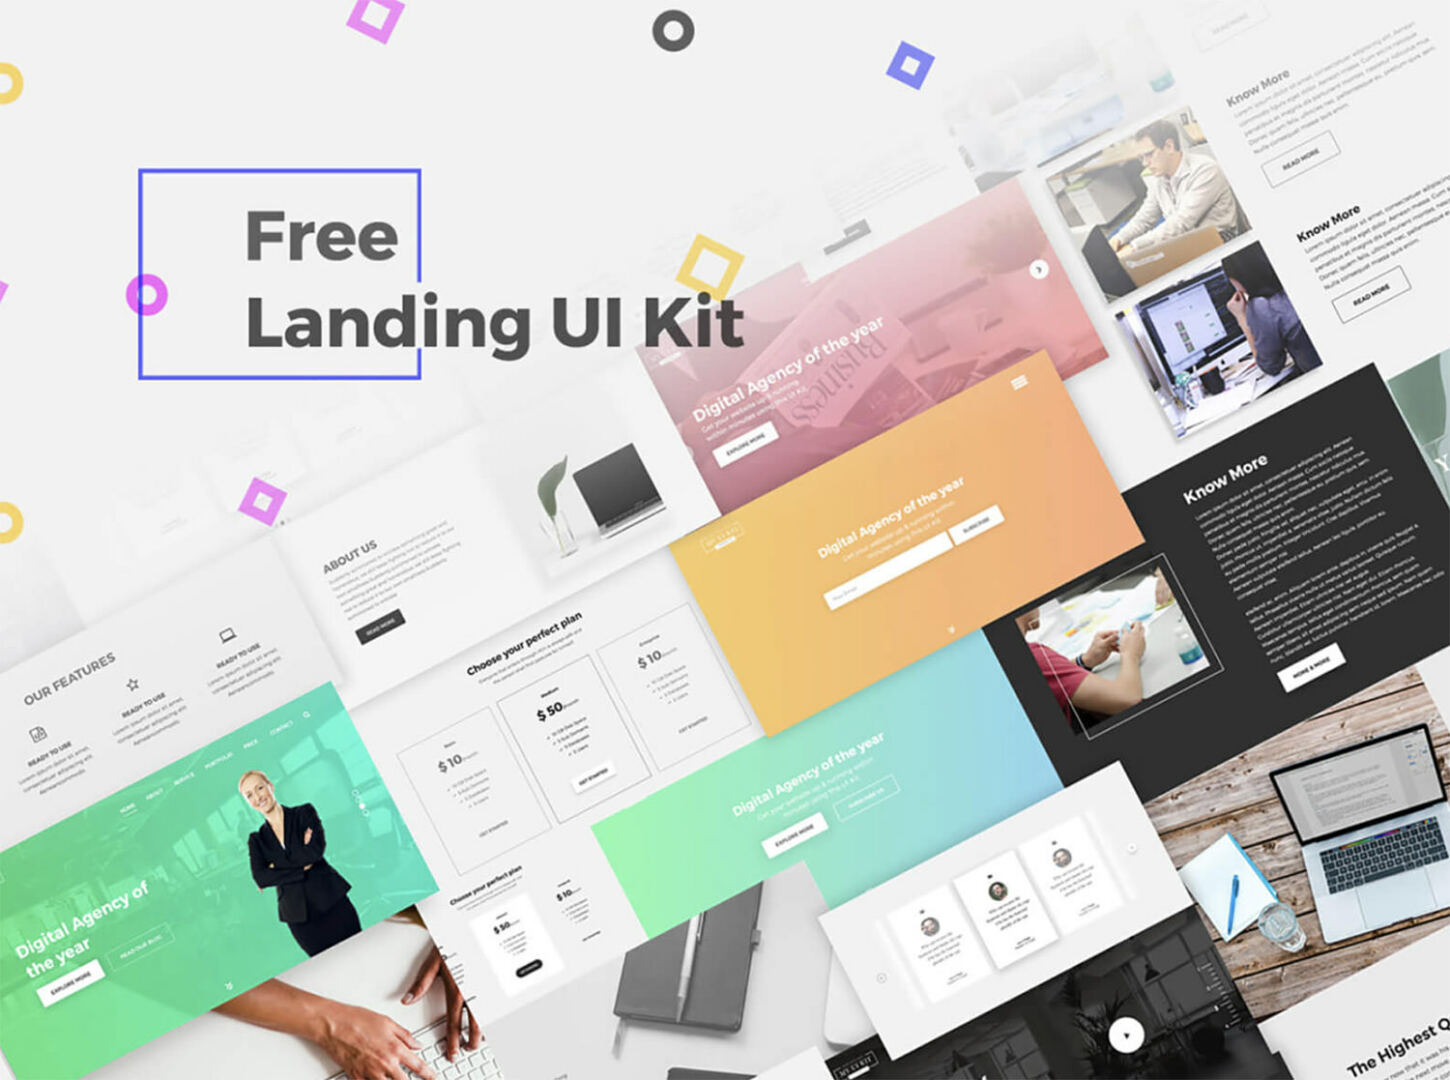 Free Landing UI Kit